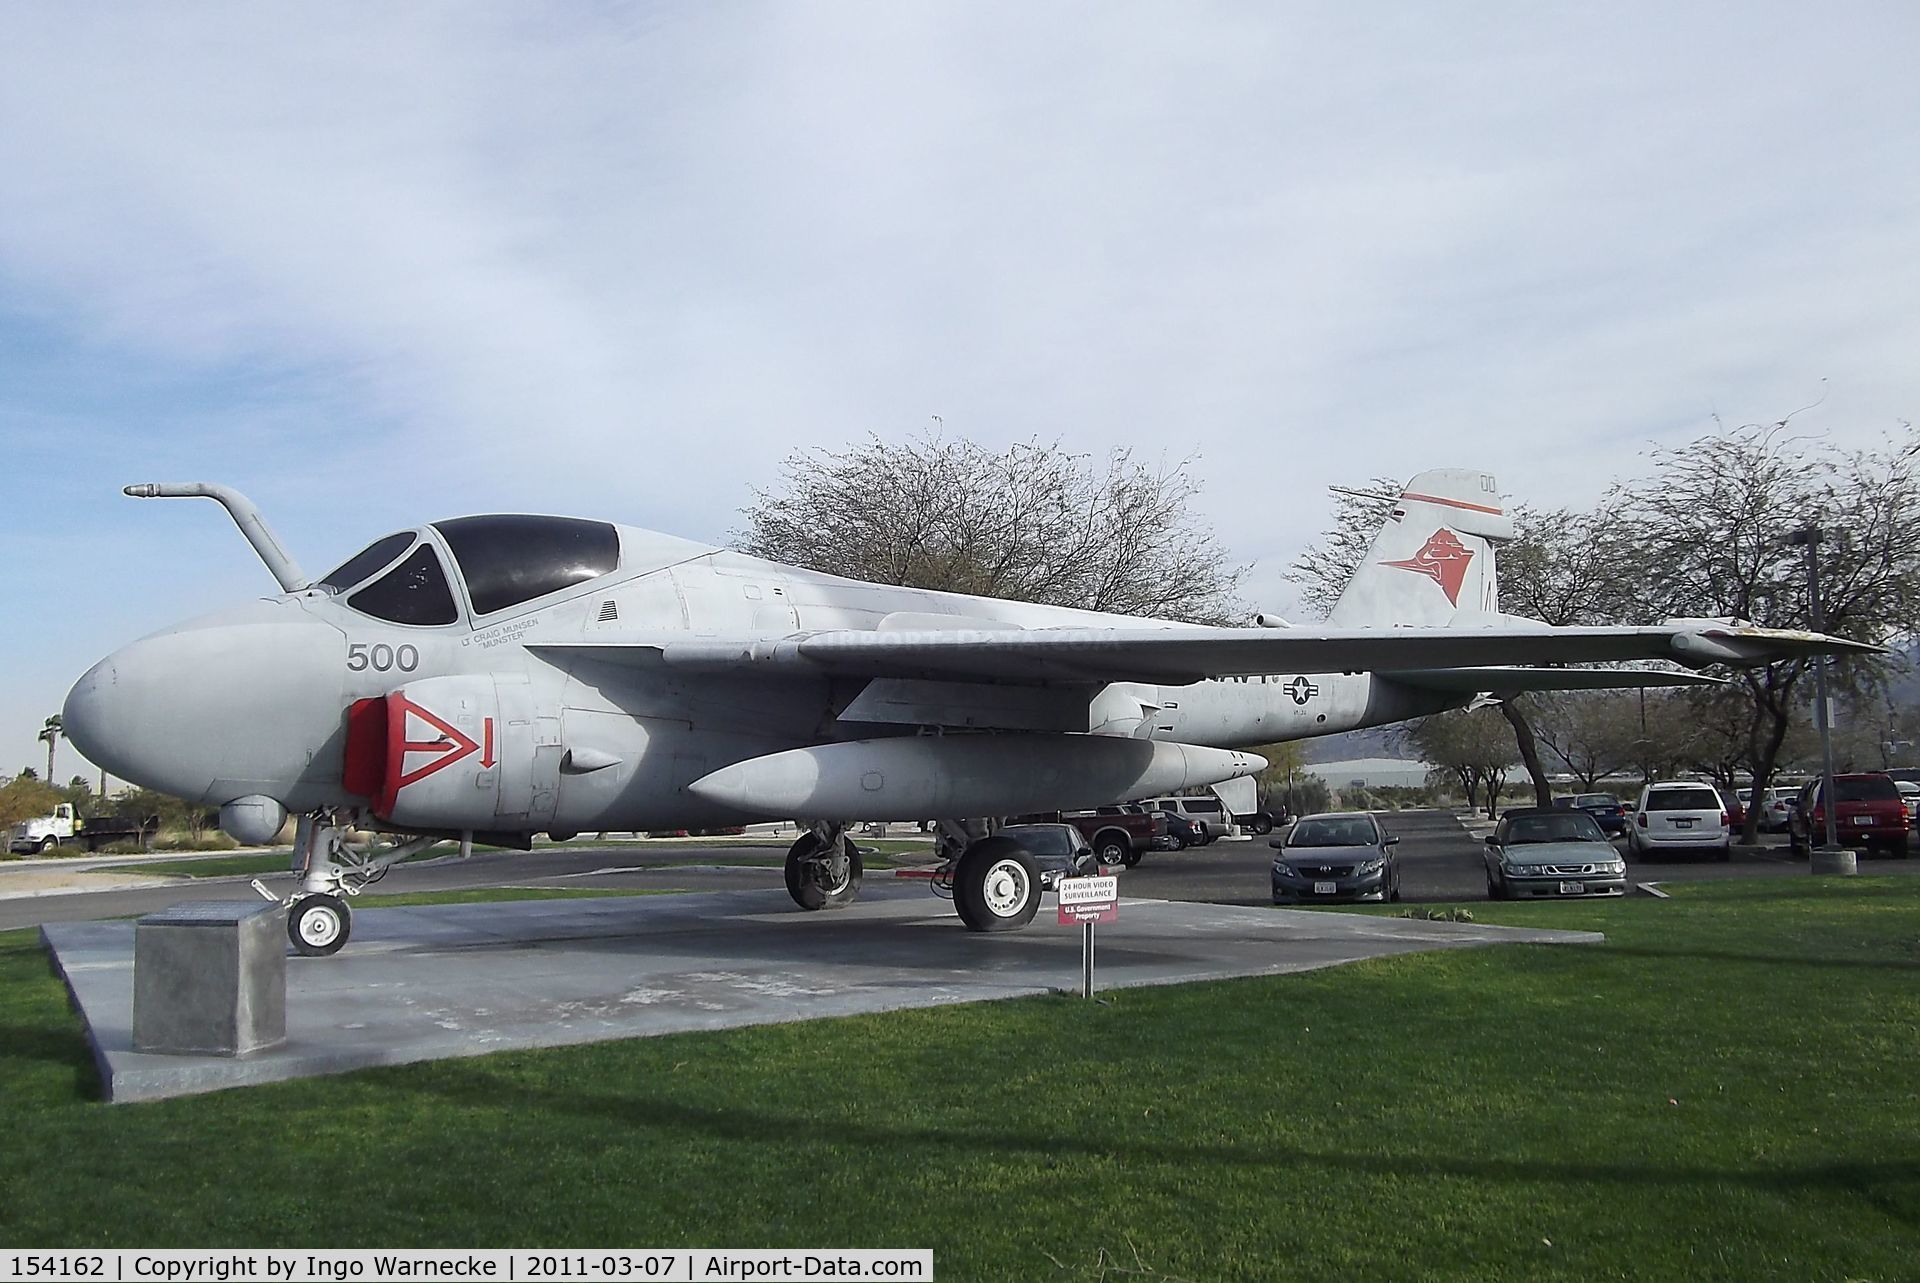 154162, Grumman A-6A Intruder C/N I-297, Grumman A-6E Intruder at the Palm Springs Air Museum, Palm Springs CA